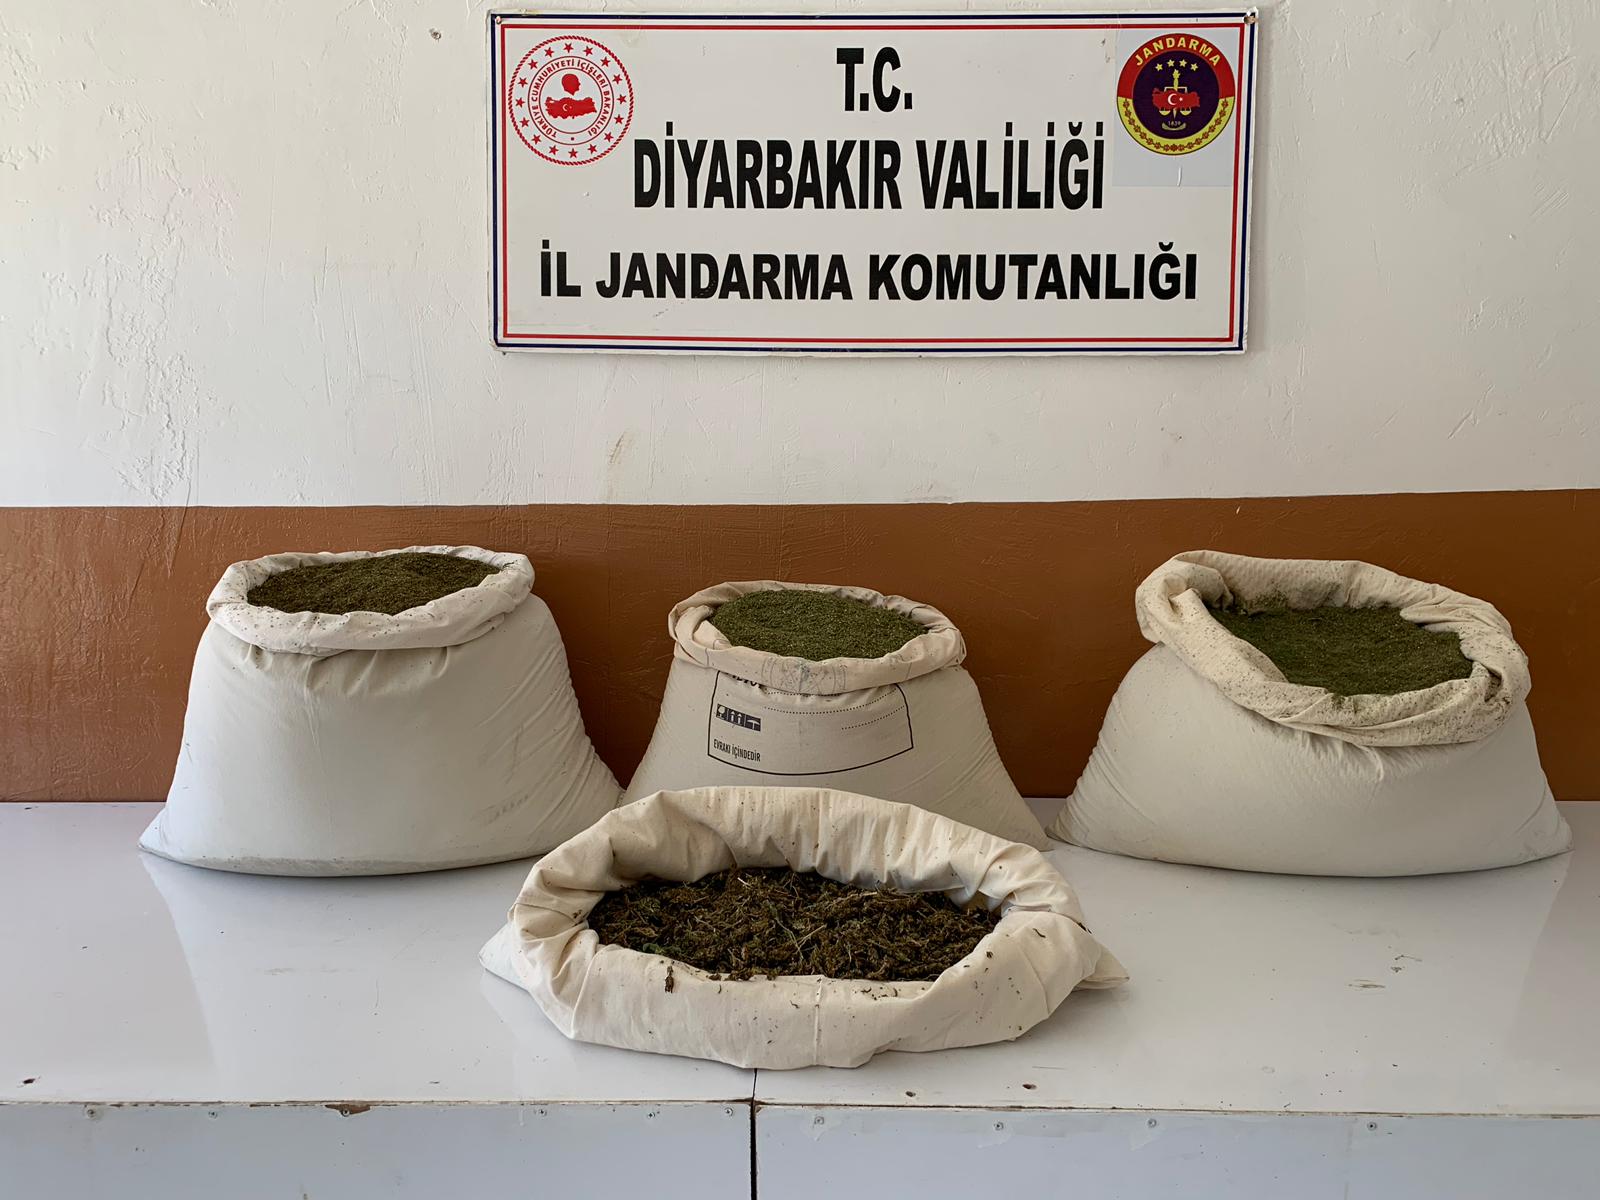 Diyarbakır'ın Lice İlçesinde Dev Uyuşturucu Operasyonu